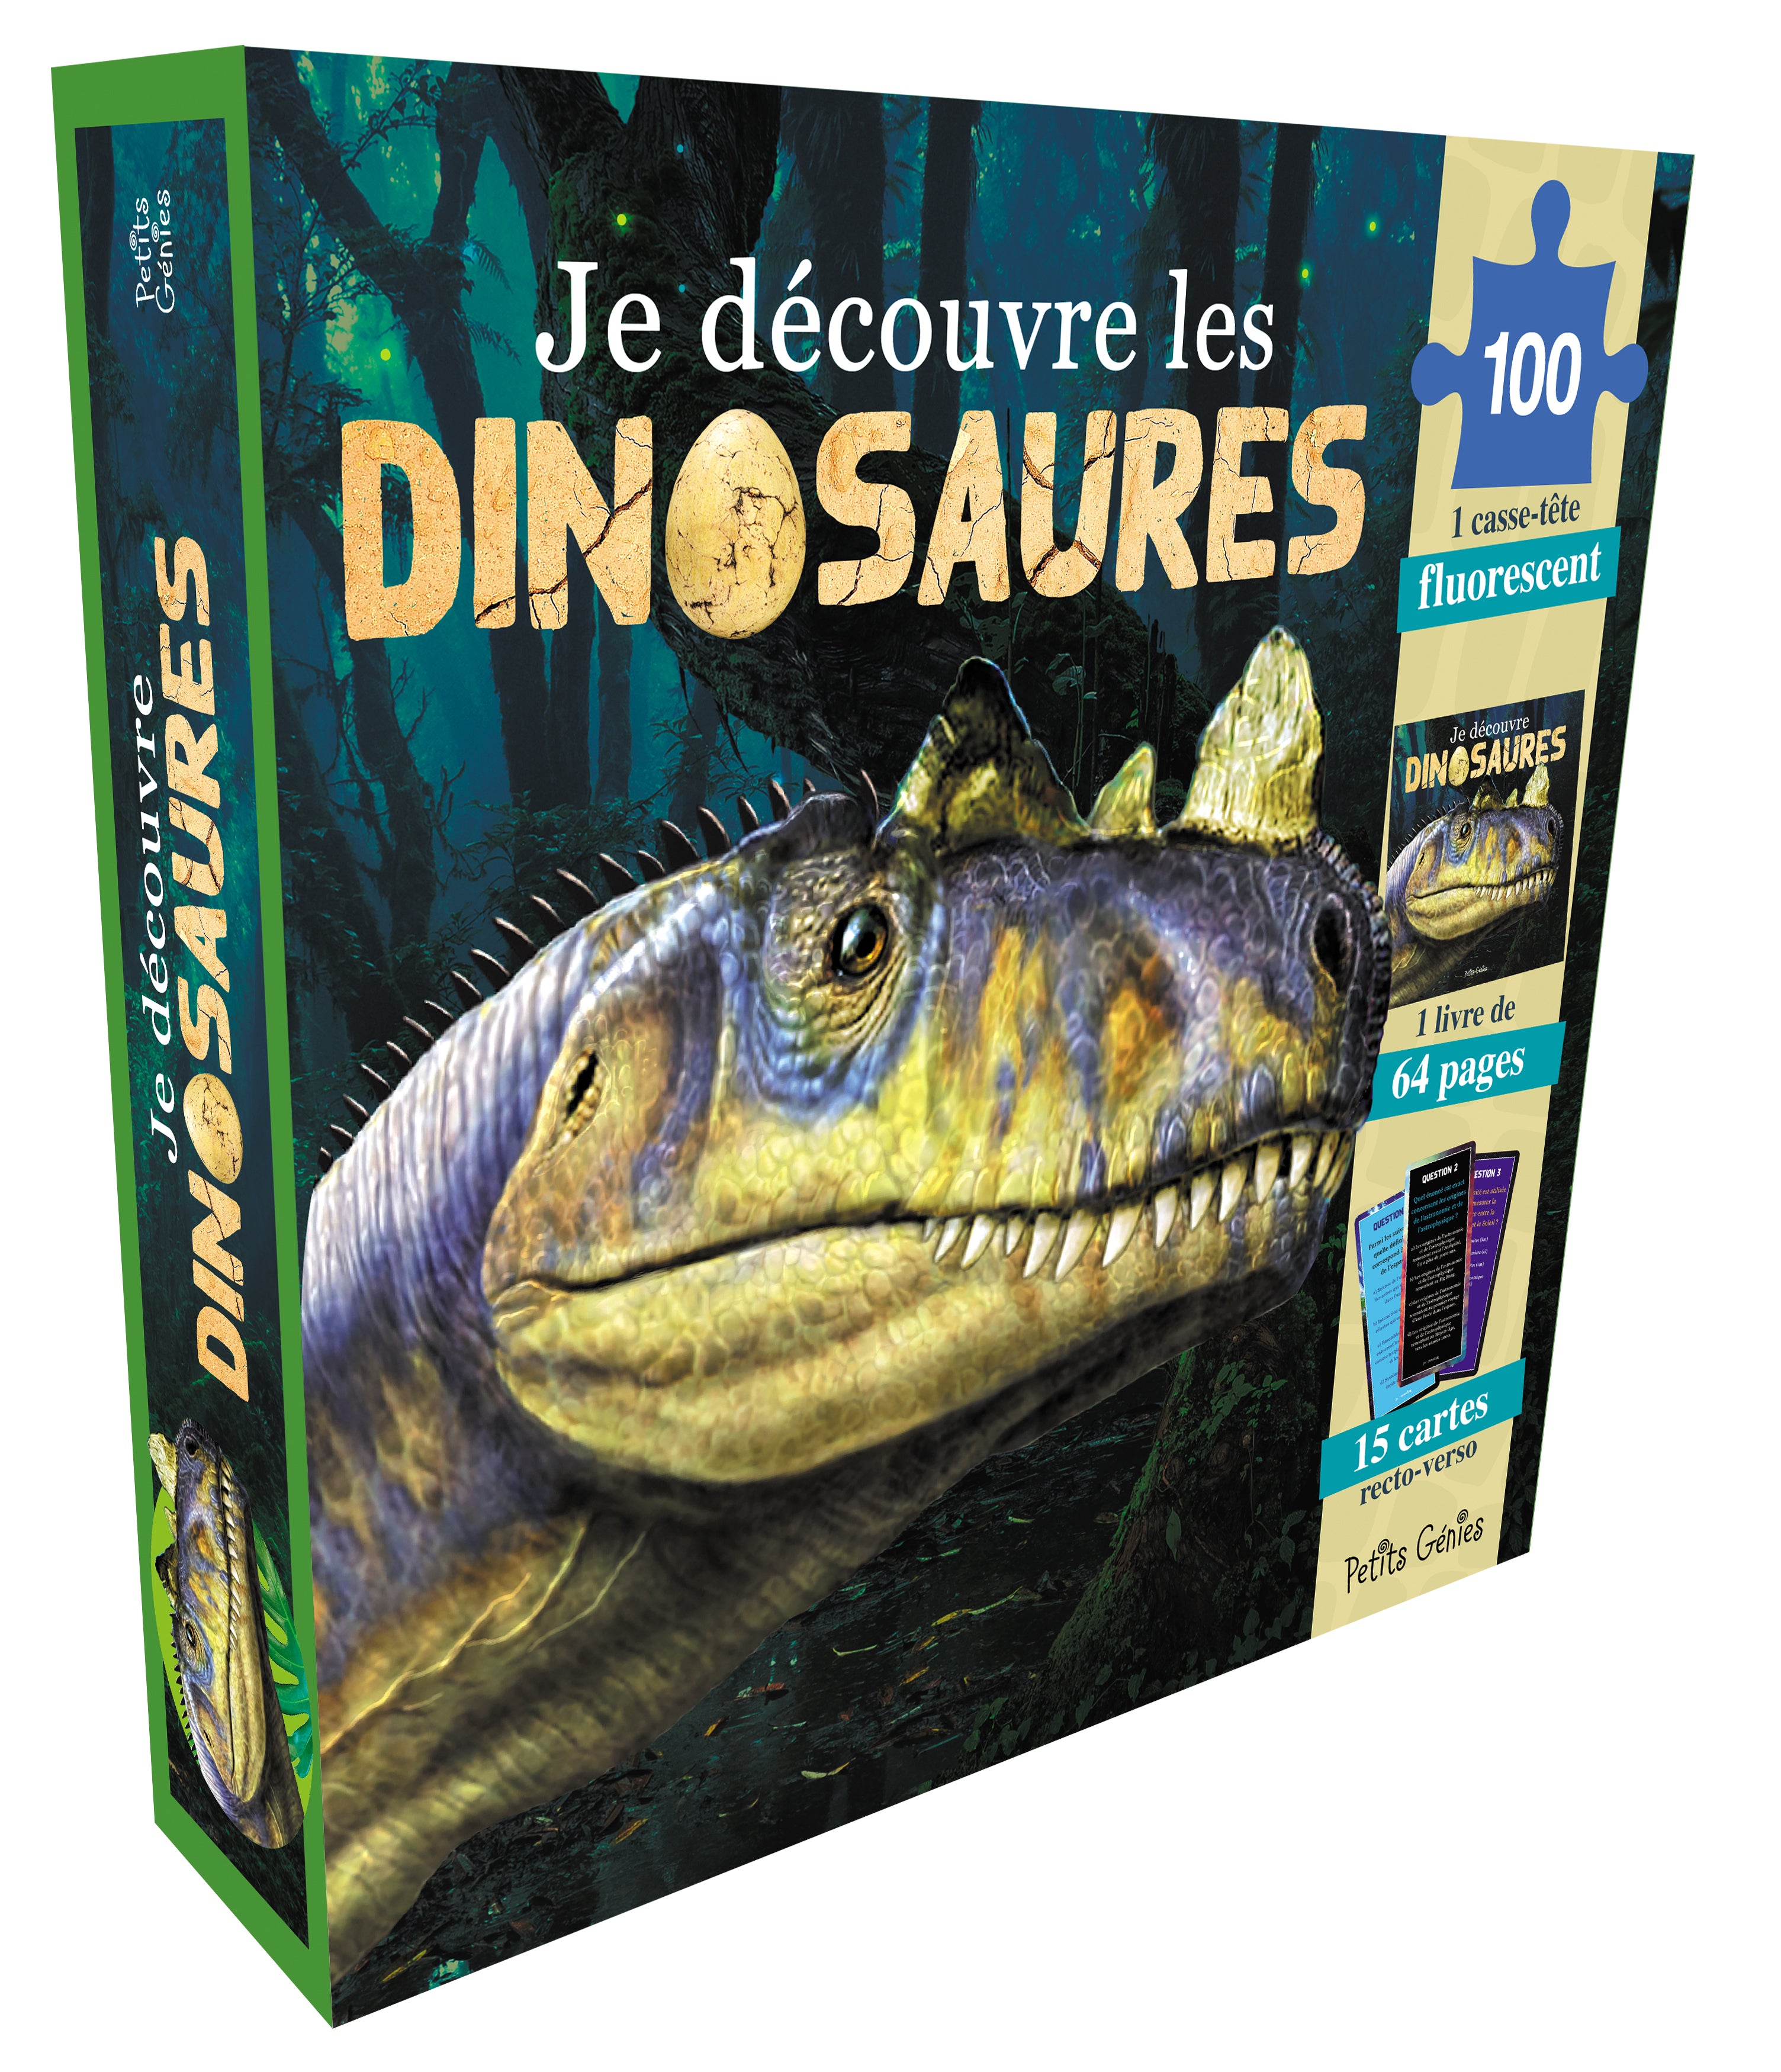 Les dinosaures - Mon coffret livre et jeux